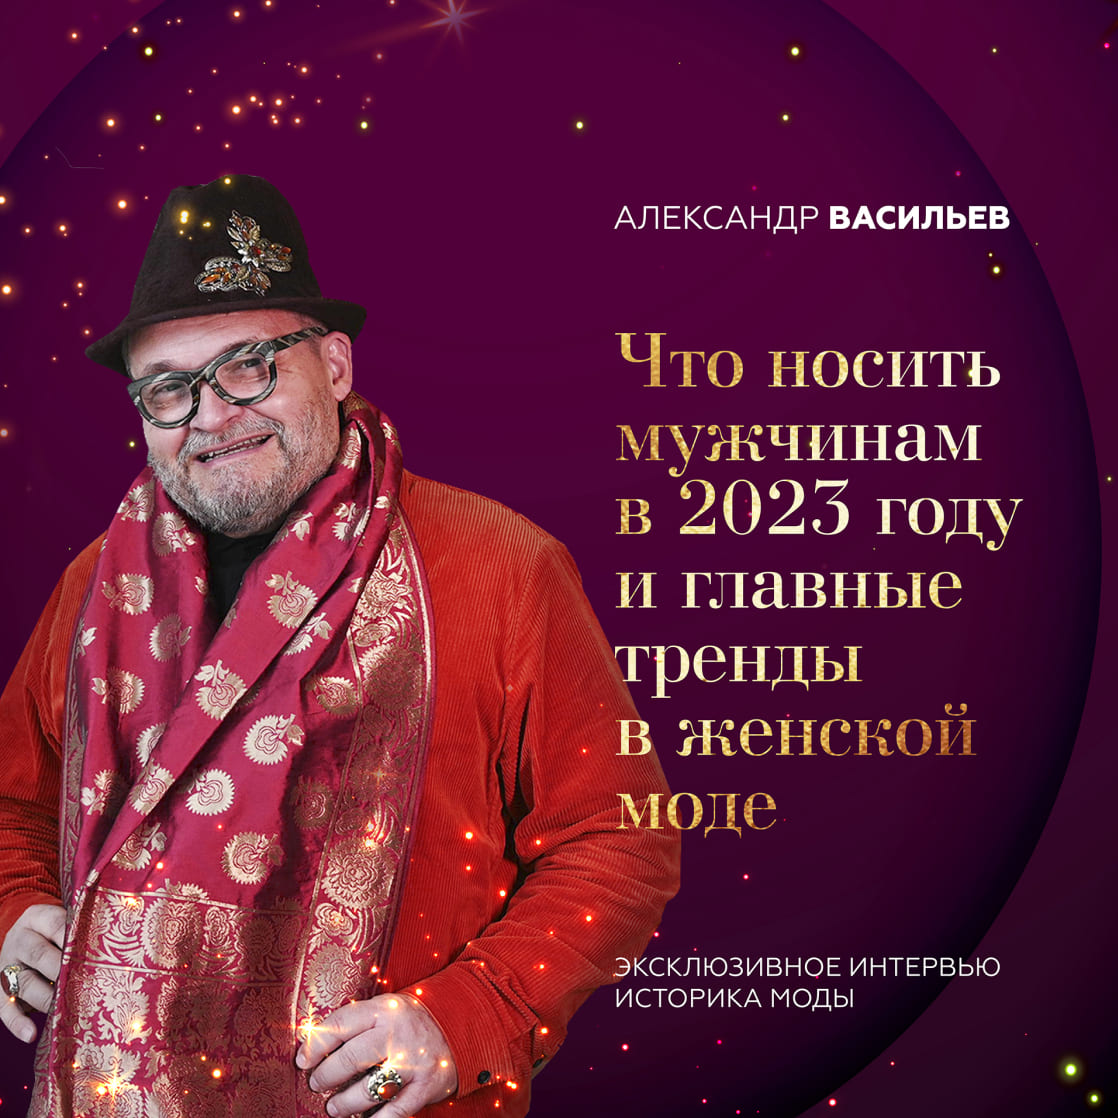 Новогоднее интервью Александра Васильева: актуальные тренды 2023.